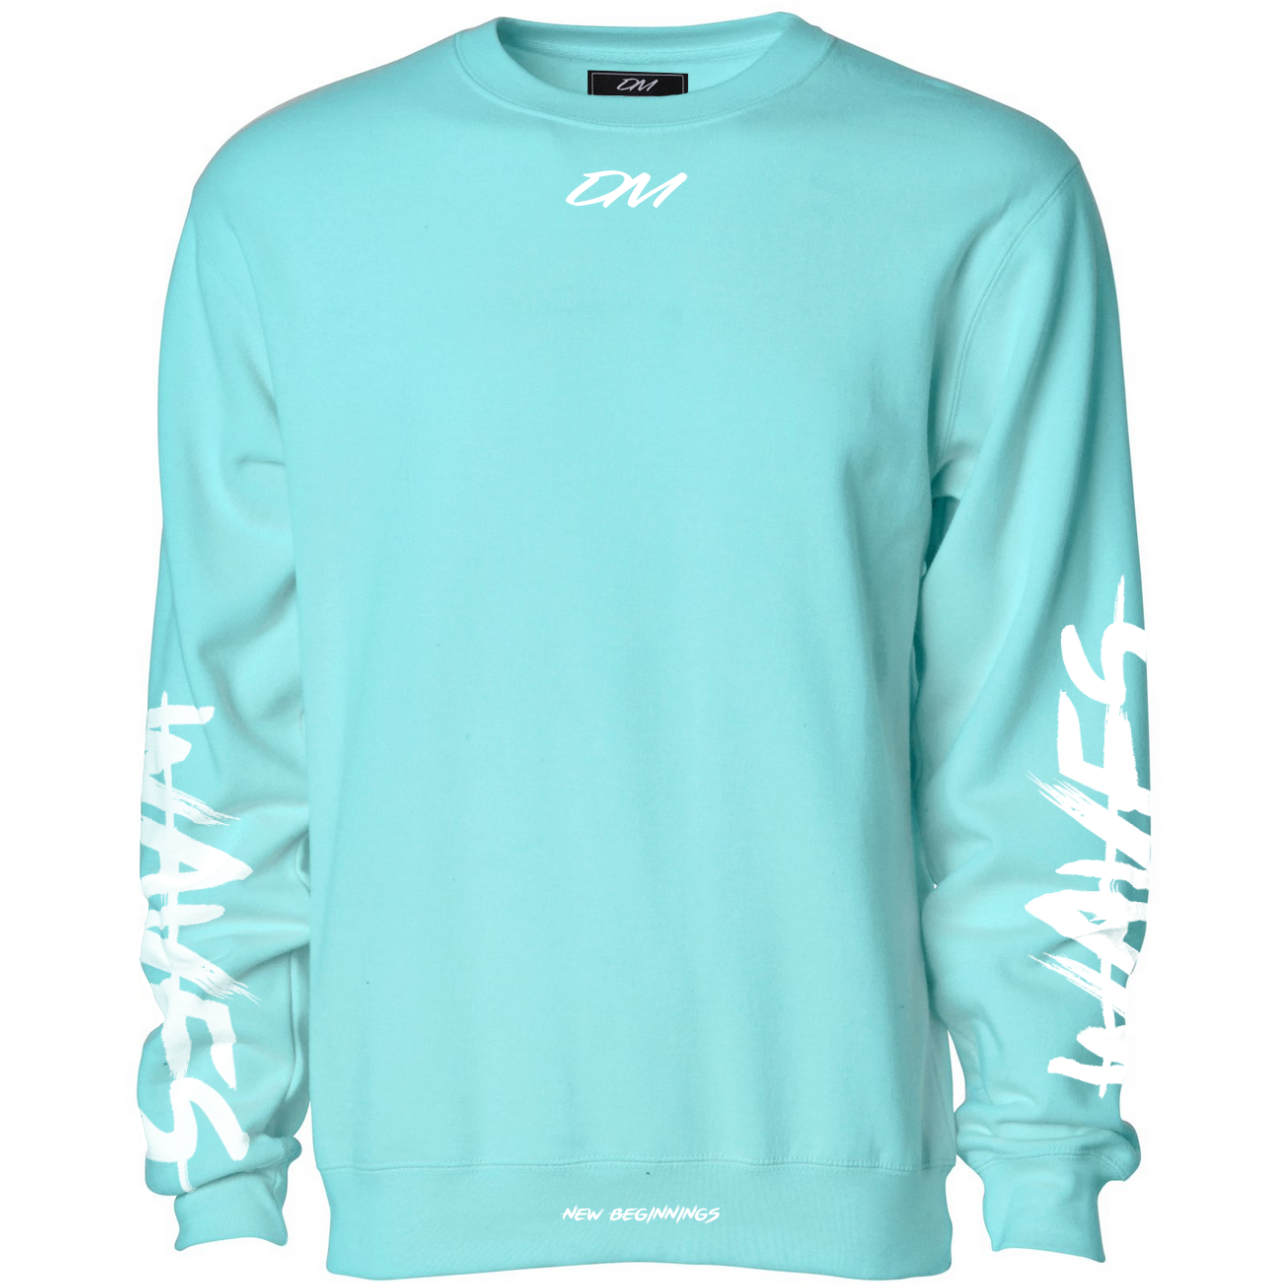 "Waves" Aqua Sweatshirt